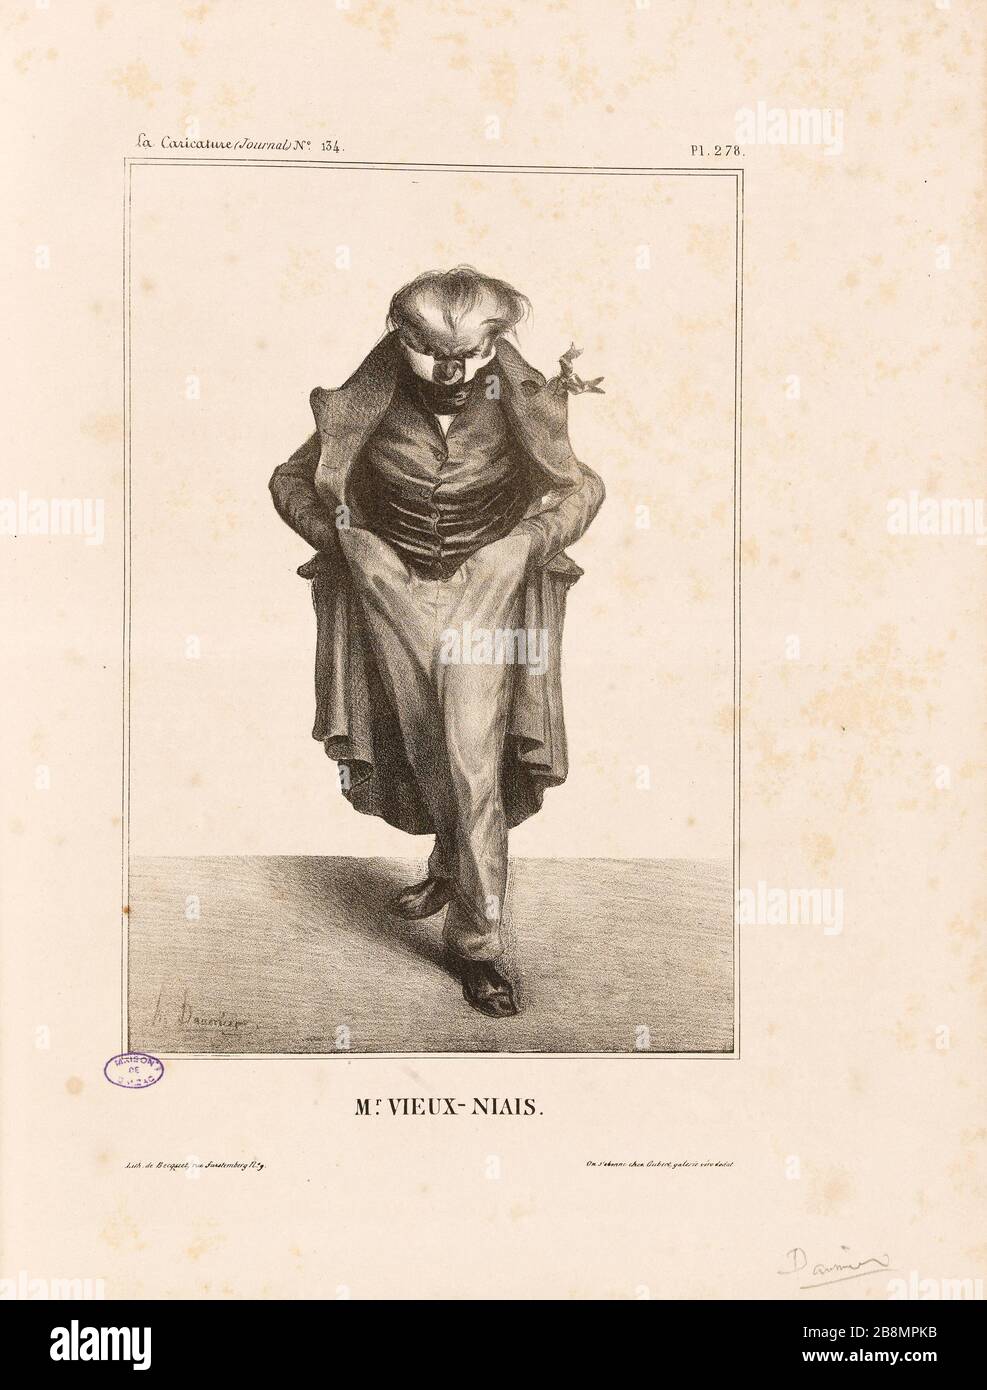 Mr Old simpleton Honoré Daumier (1808-1879). Caricature de presse. 'Mr Vieux-niais'. Planche parue dans 'La Caricature' du 30 mai 1833. Lithographie. Paris, Maison de Balzac. Stock Photo